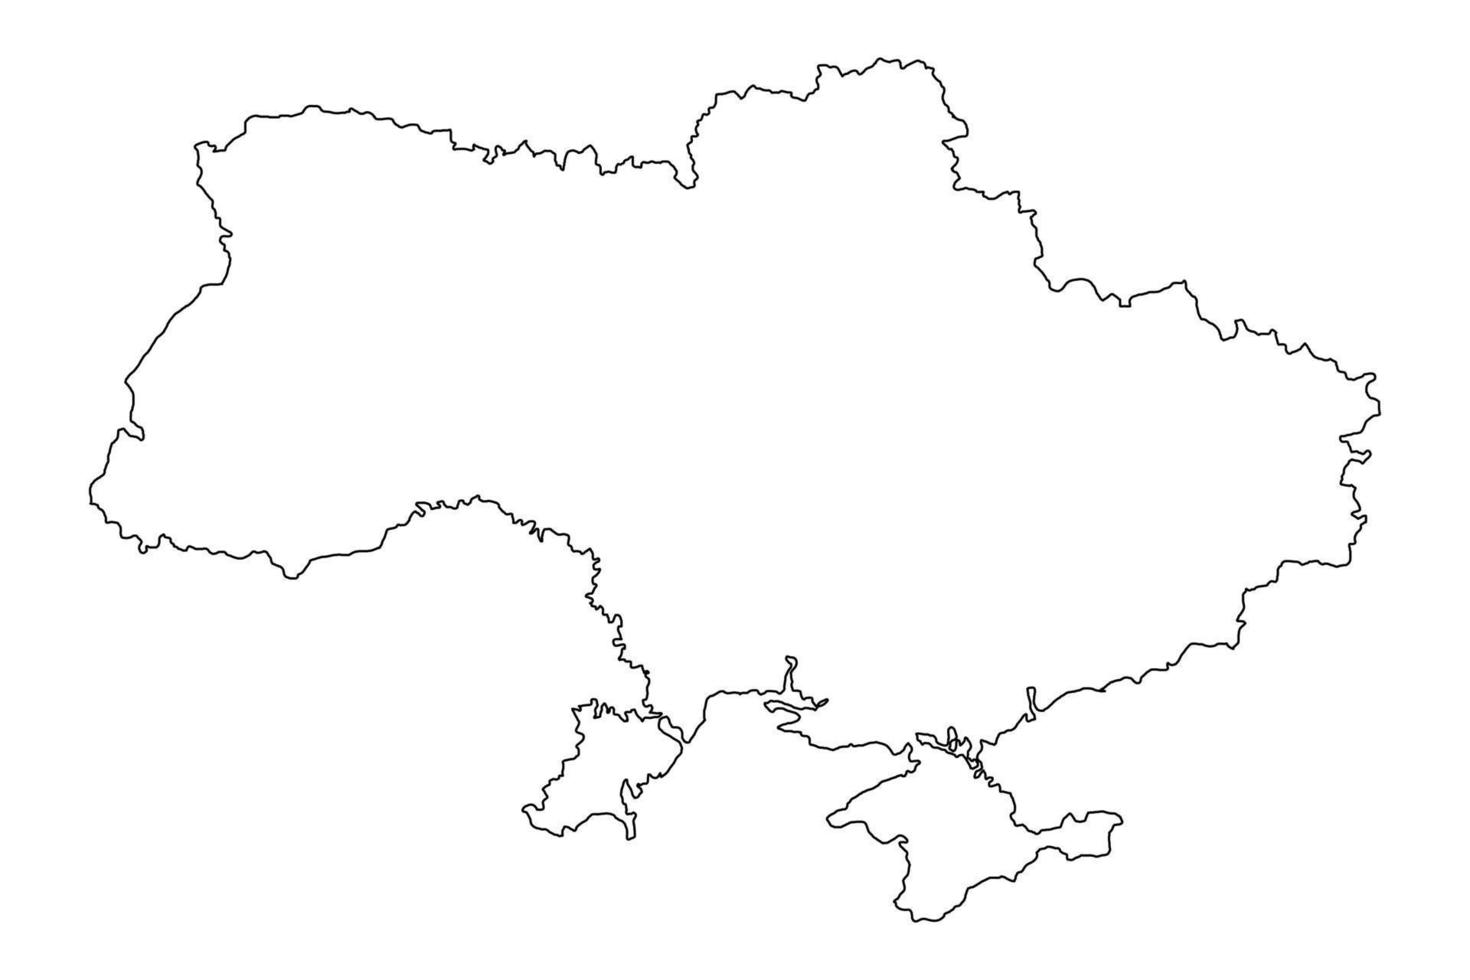 ukraine landkarte. europäische Länder. Das ukrainische Territorium grenzt an die Krim. Gekritzelzeichnung Umrissskizze. vektor